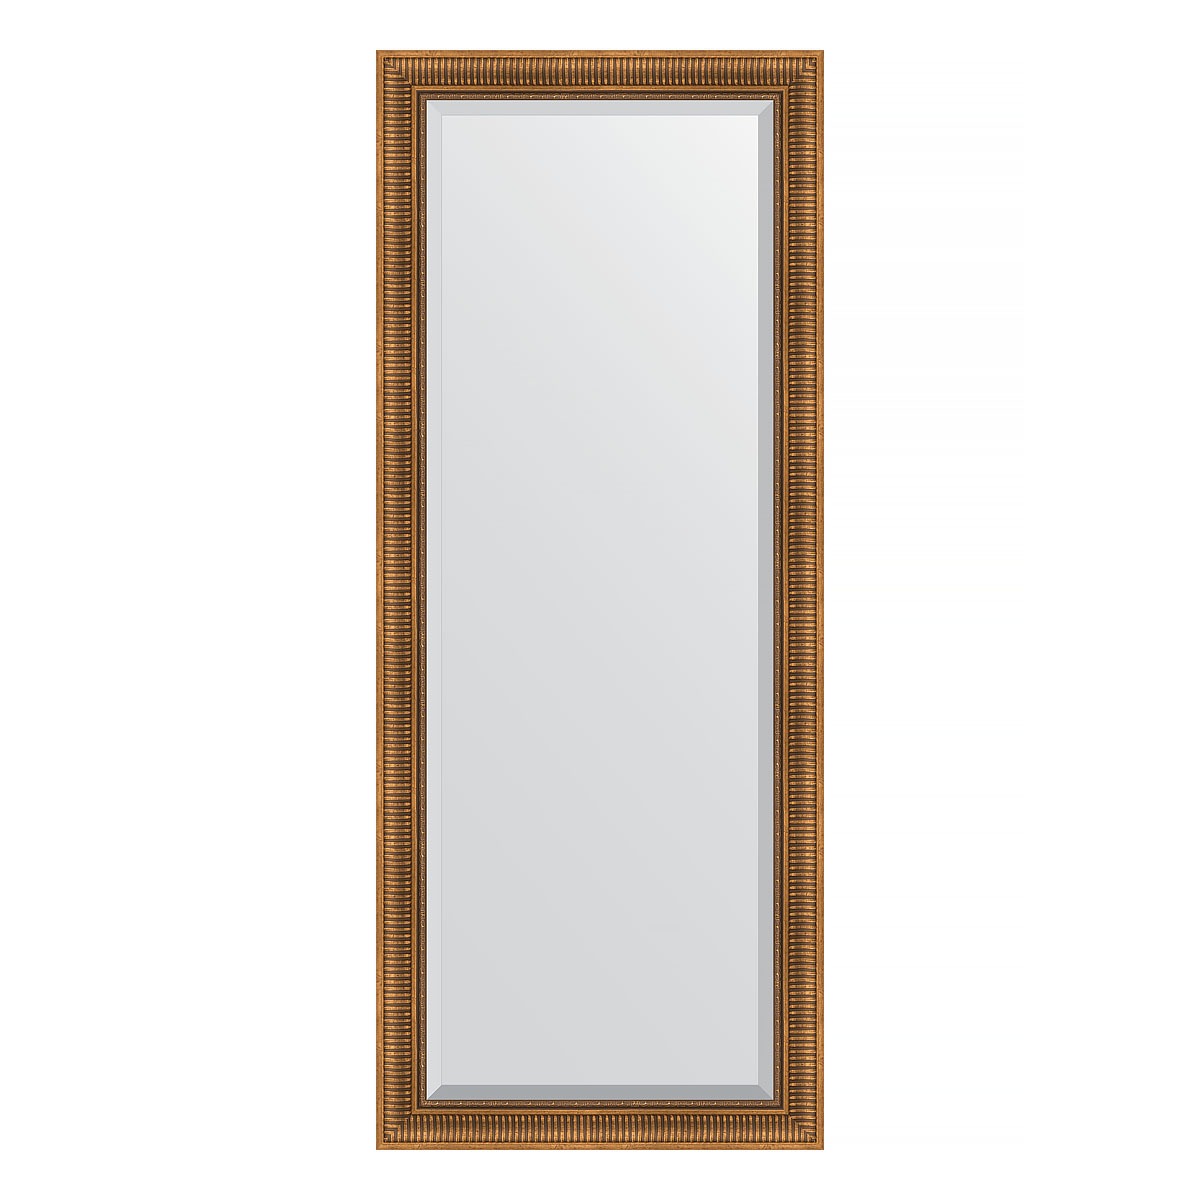 Зеркало напольное с фацетом в багетной раме Evoform бронзовый акведук 93 мм 82x202 см зеркало напольное с фацетом в багетной раме серебряный акведук 93 мм 82x202 см